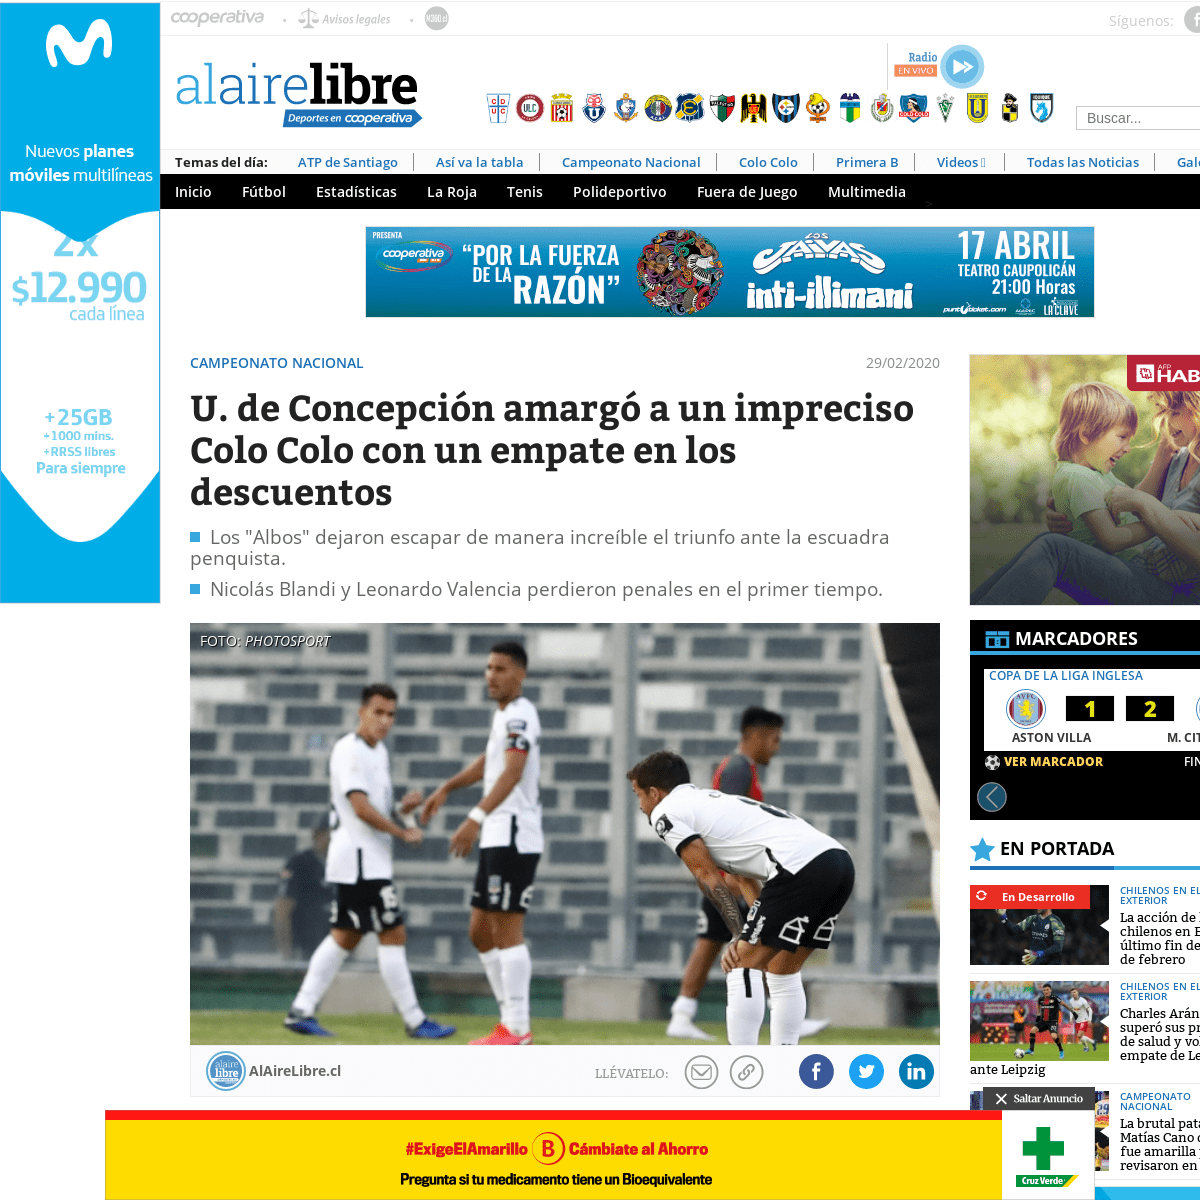 A complete backup of www.alairelibre.cl/noticias/deportes/futbol/campeonato-nacional/u-de-concepcion-amargo-a-un-impreciso-colo-